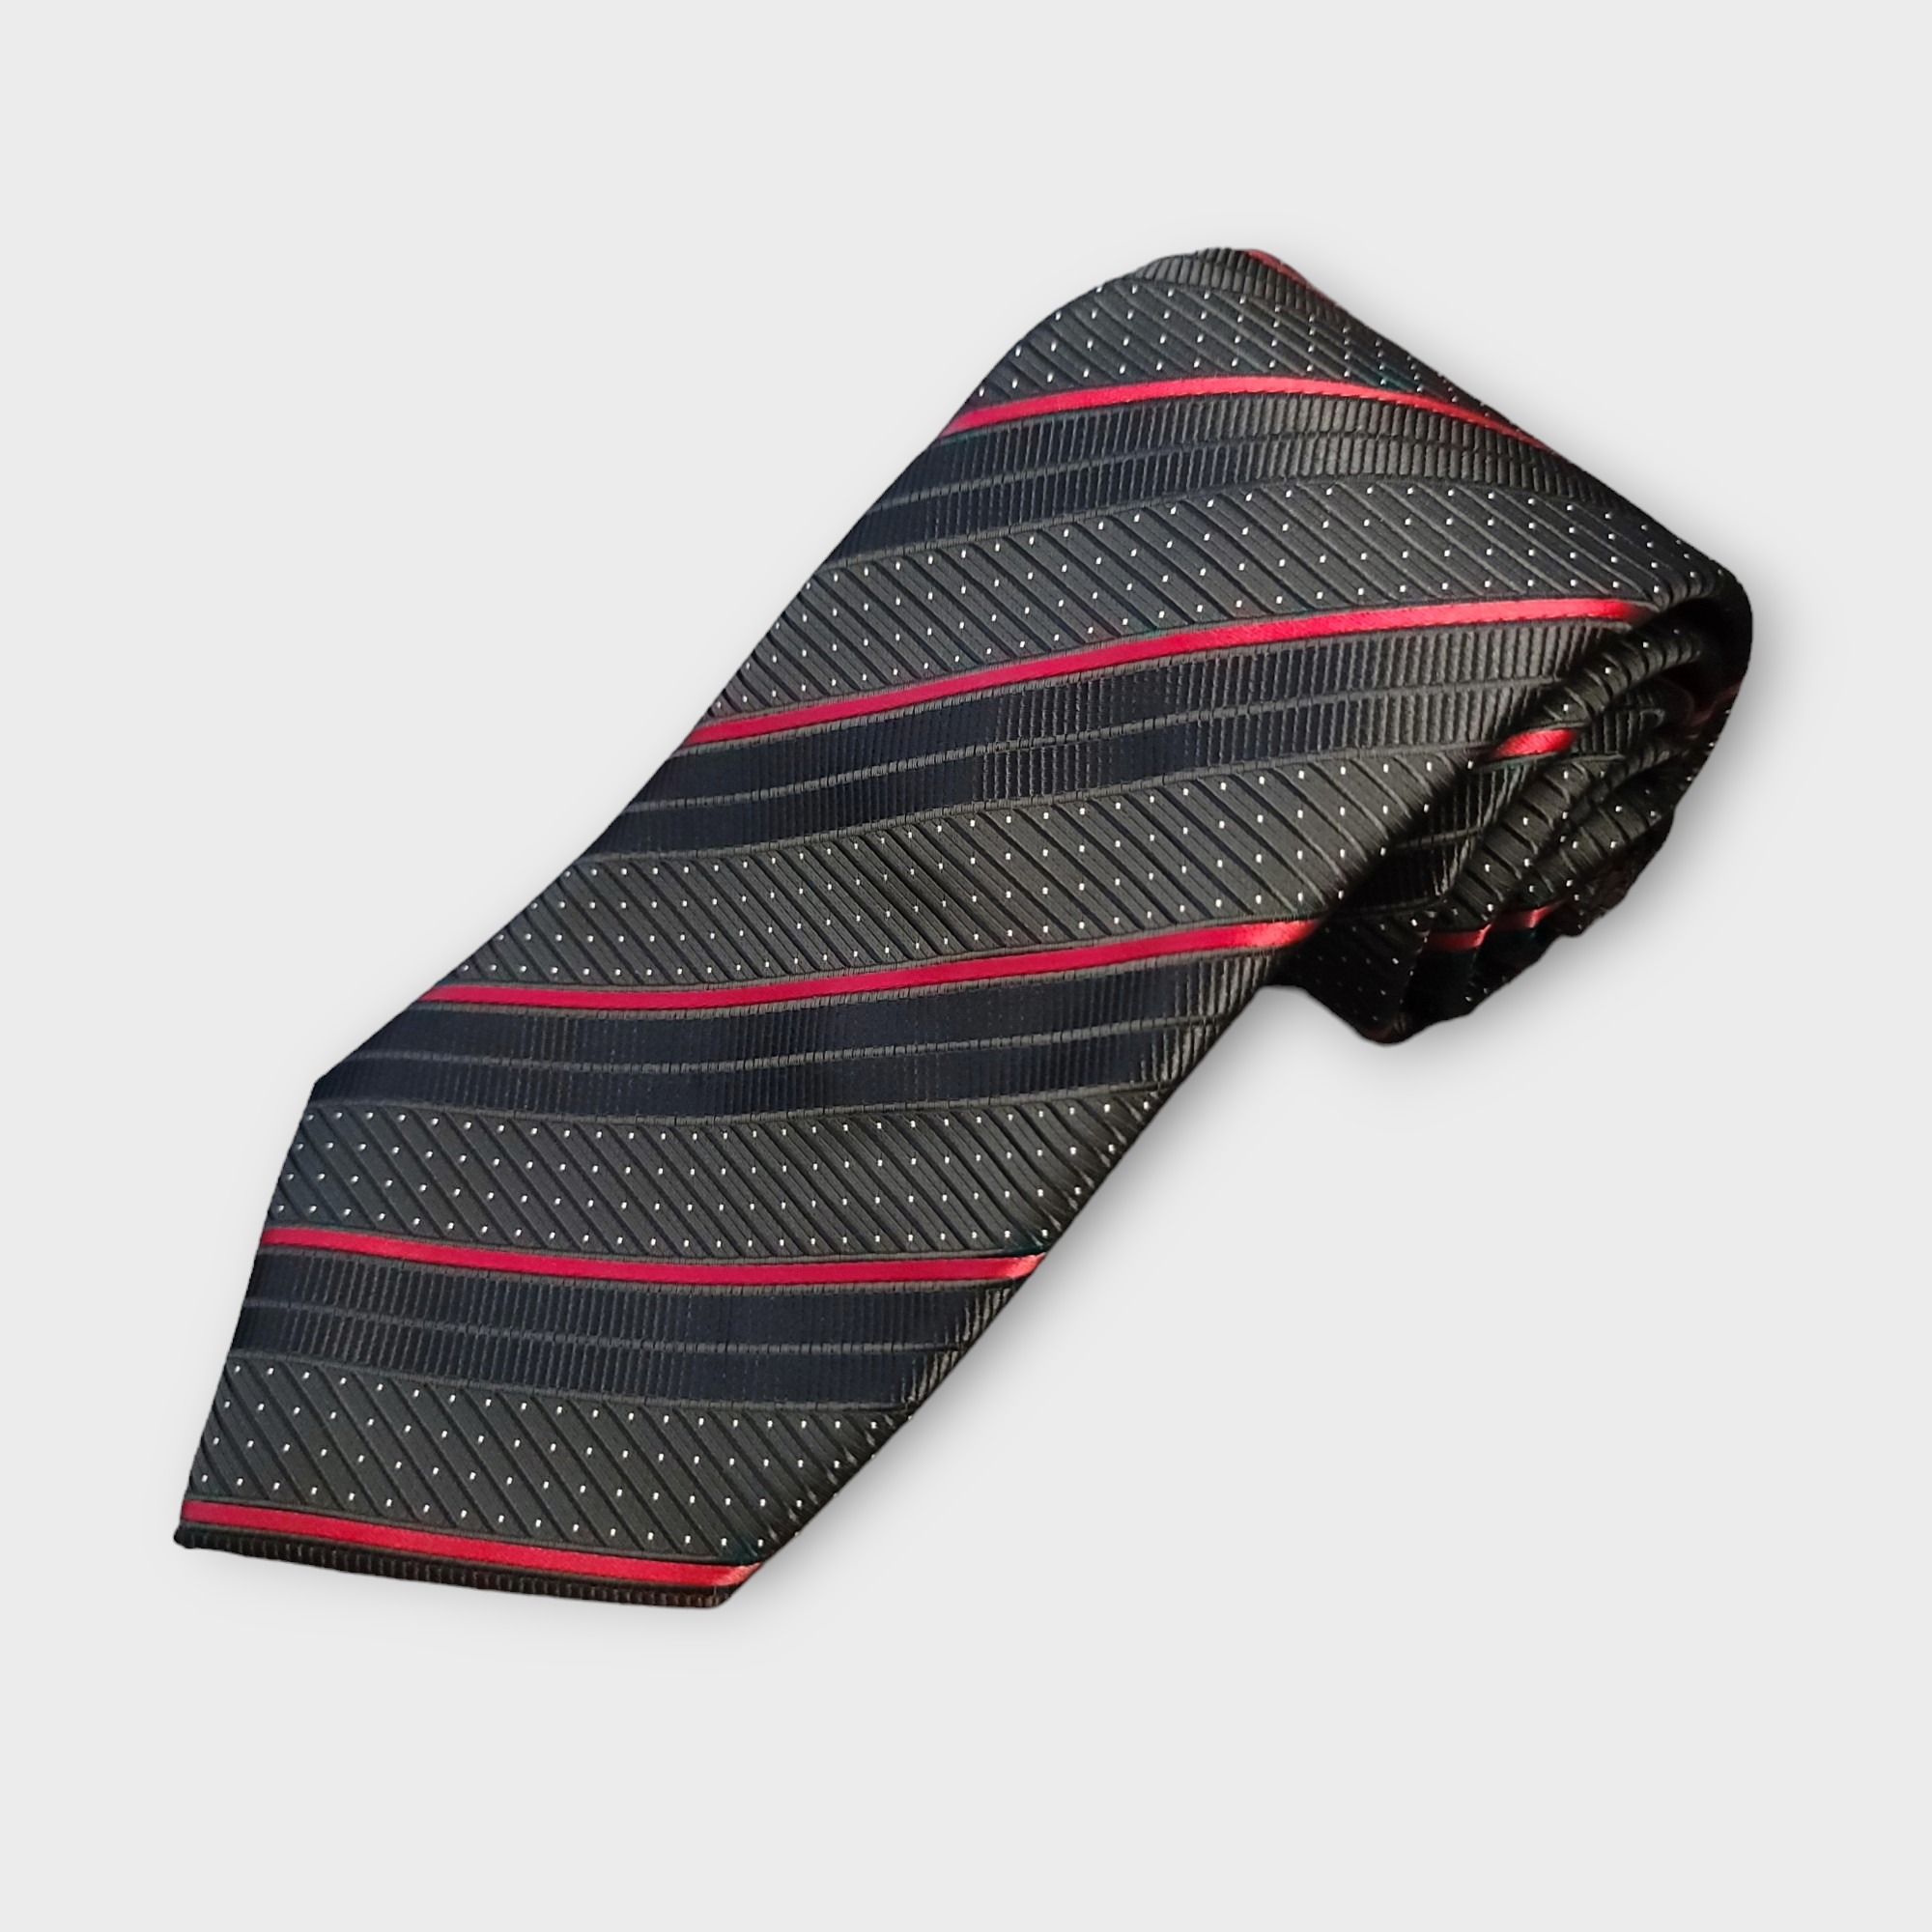 Black Red Stripe Silk Tie Pocket Square Cufflink Set